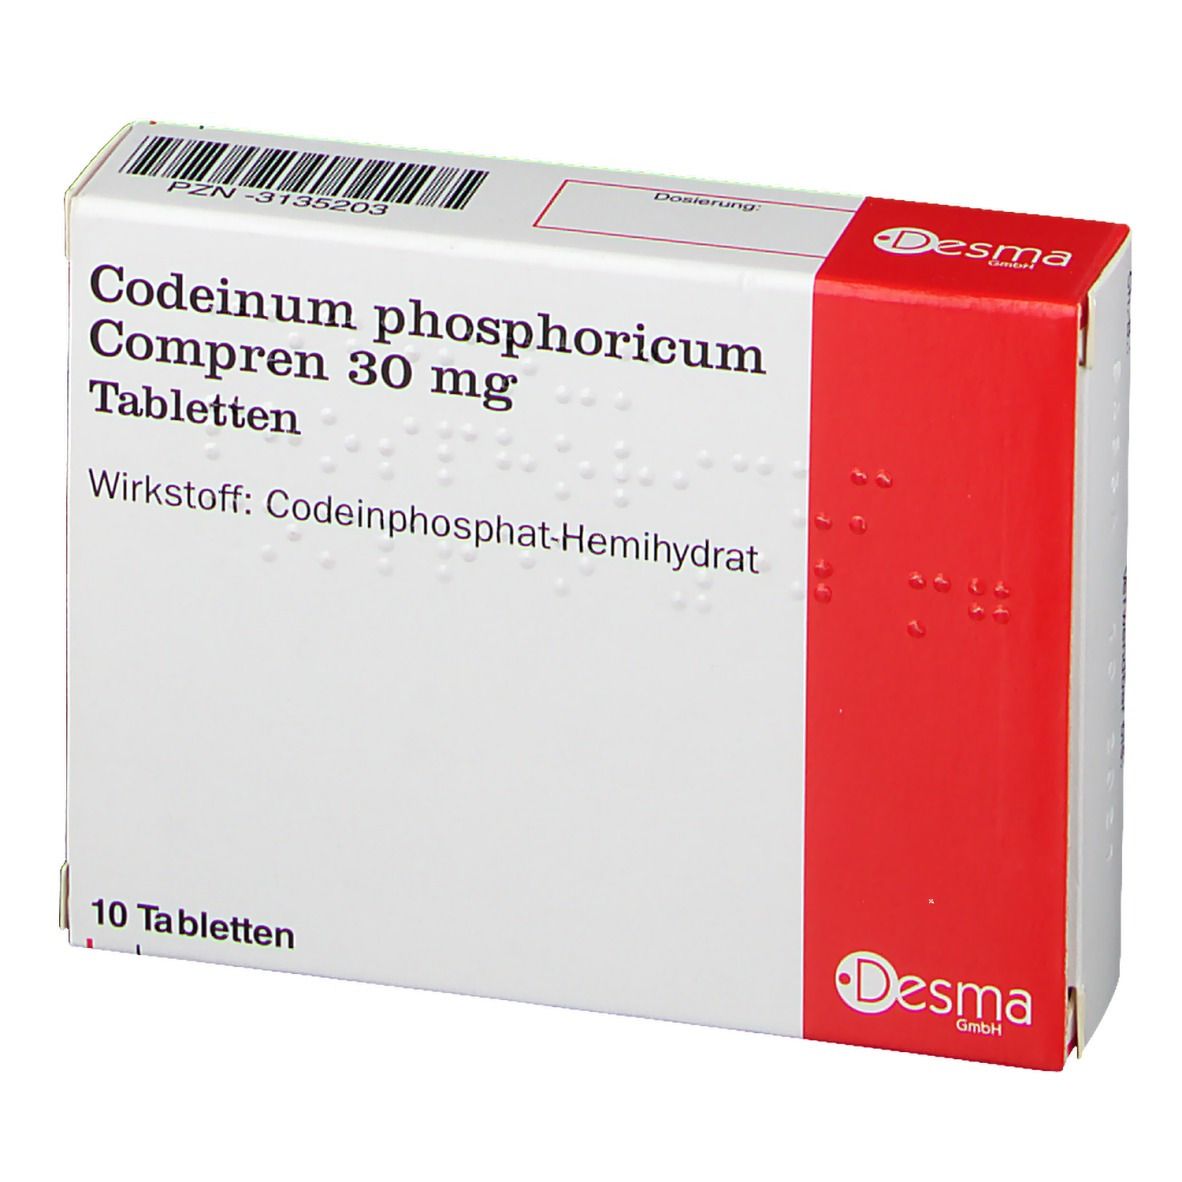 Codeinum phosphoricum Compren 30 mg